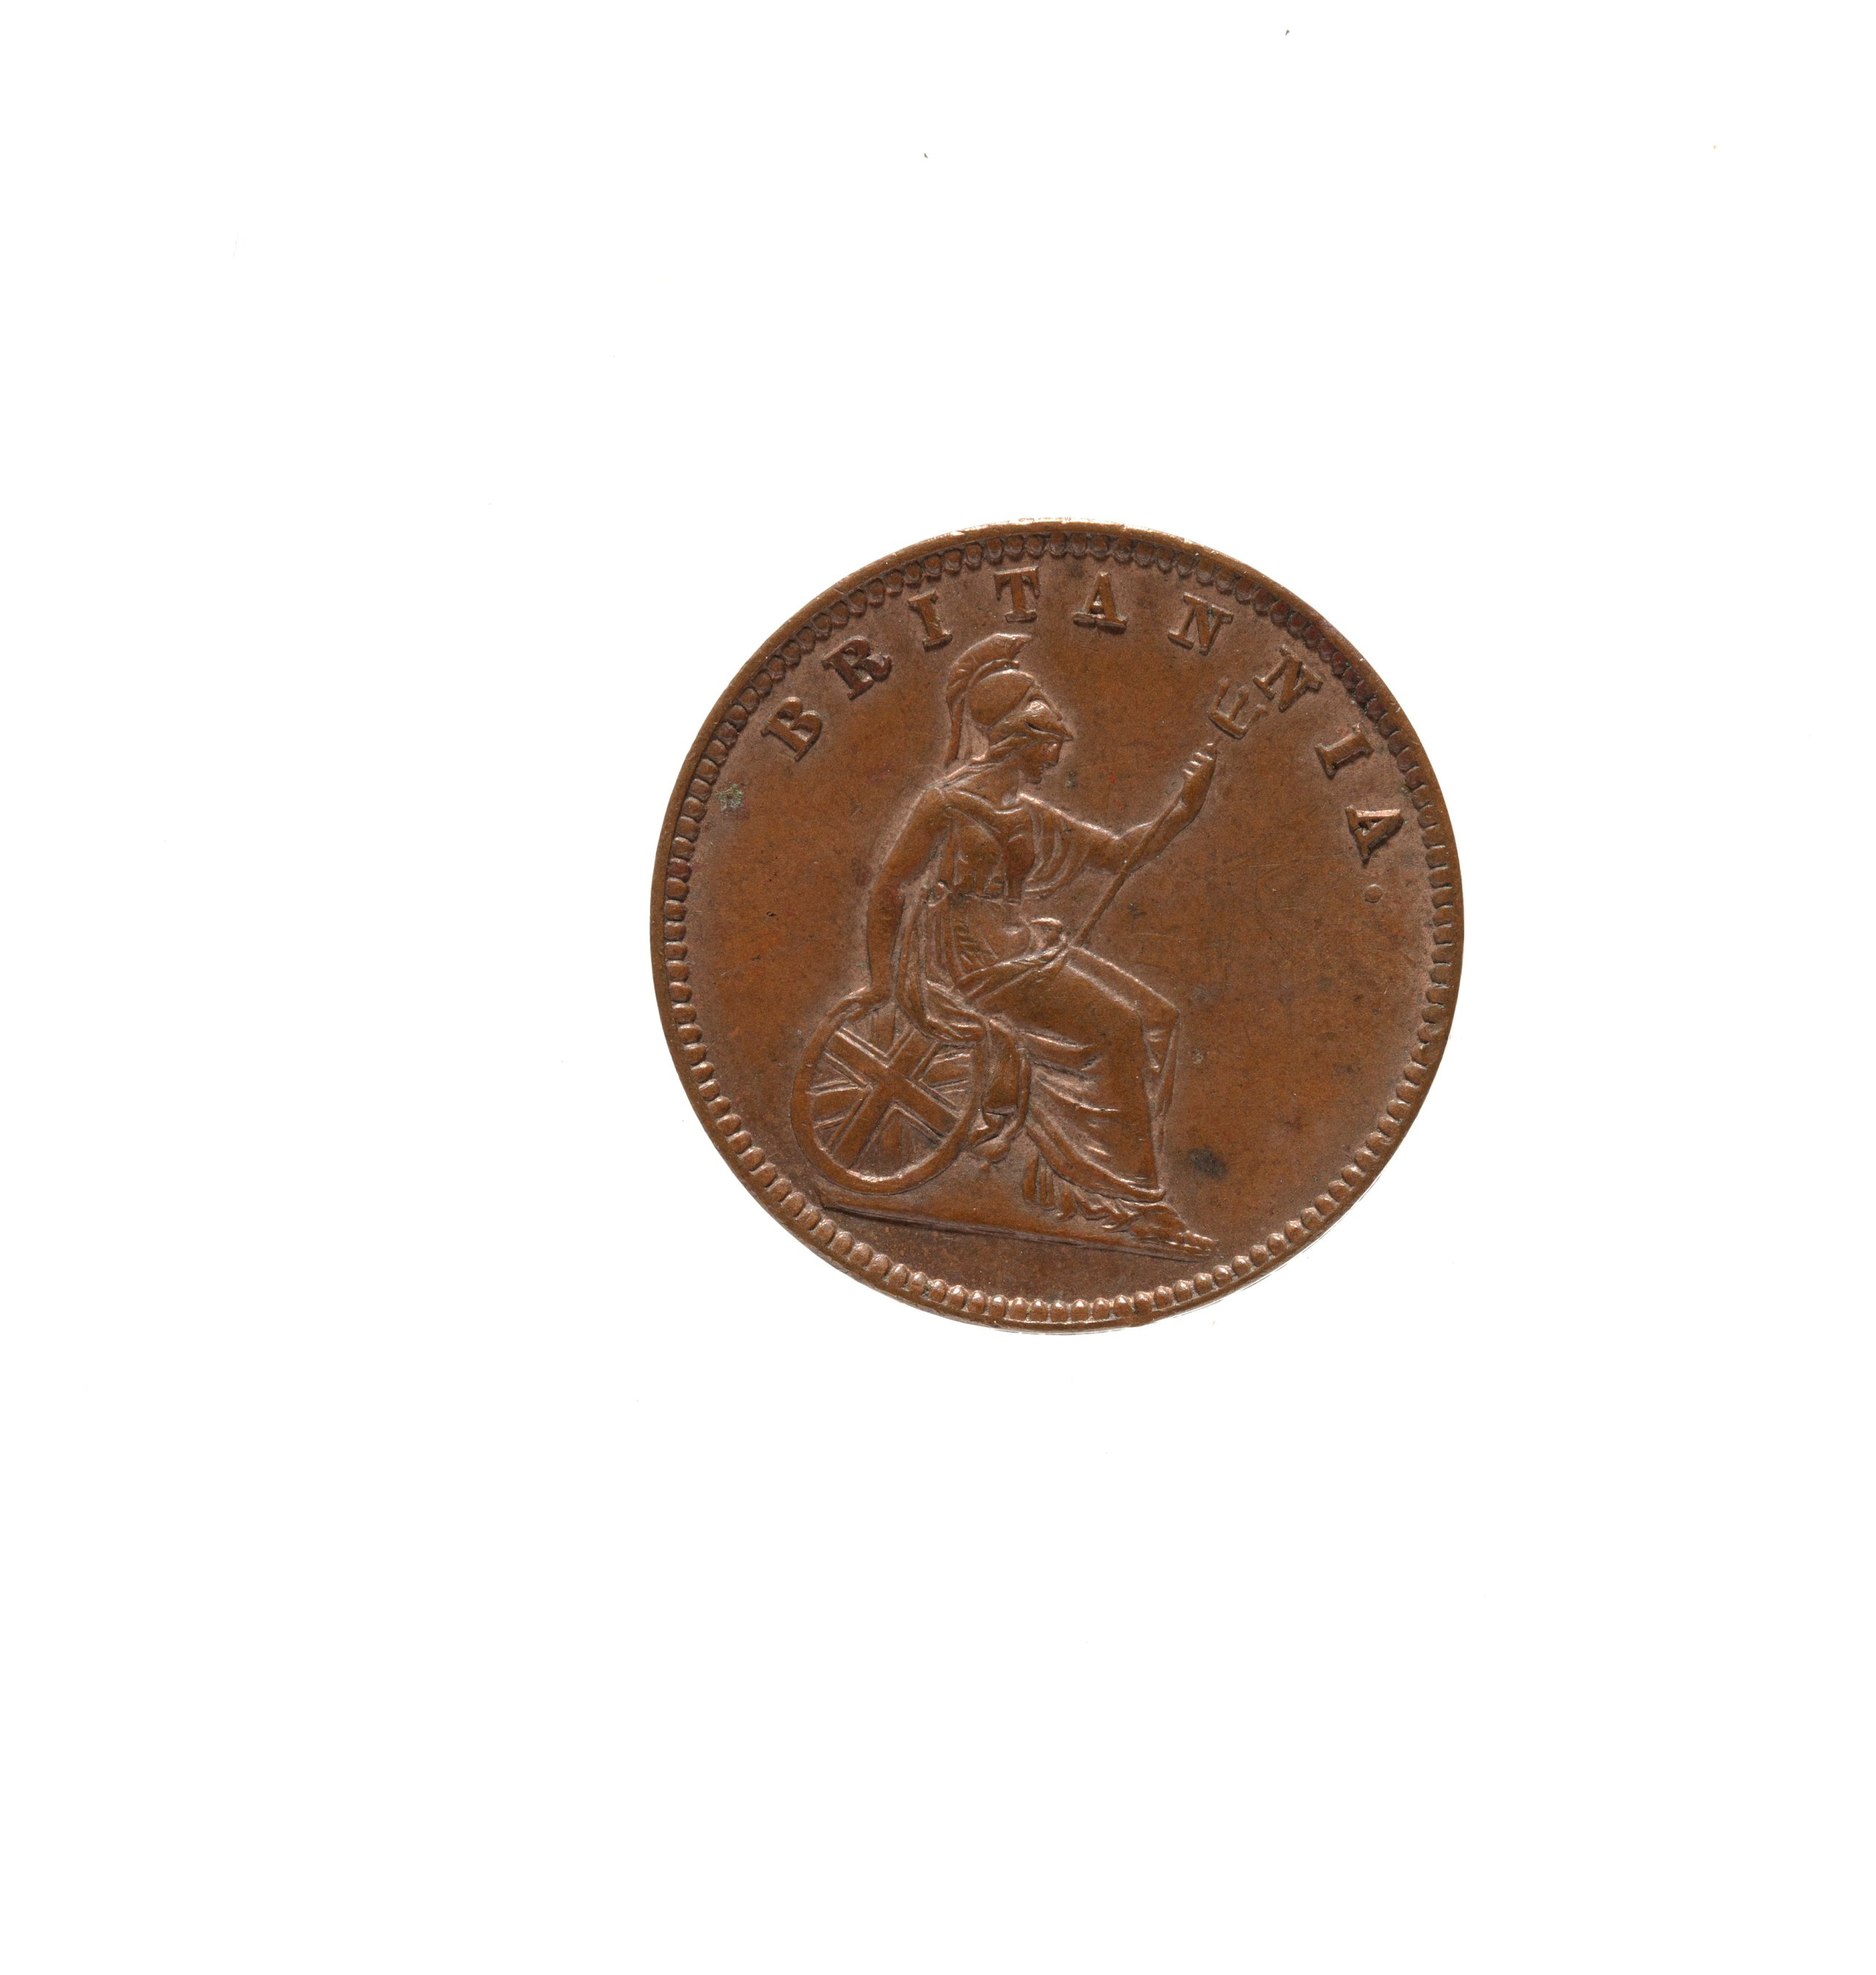 Greek Farthing coin